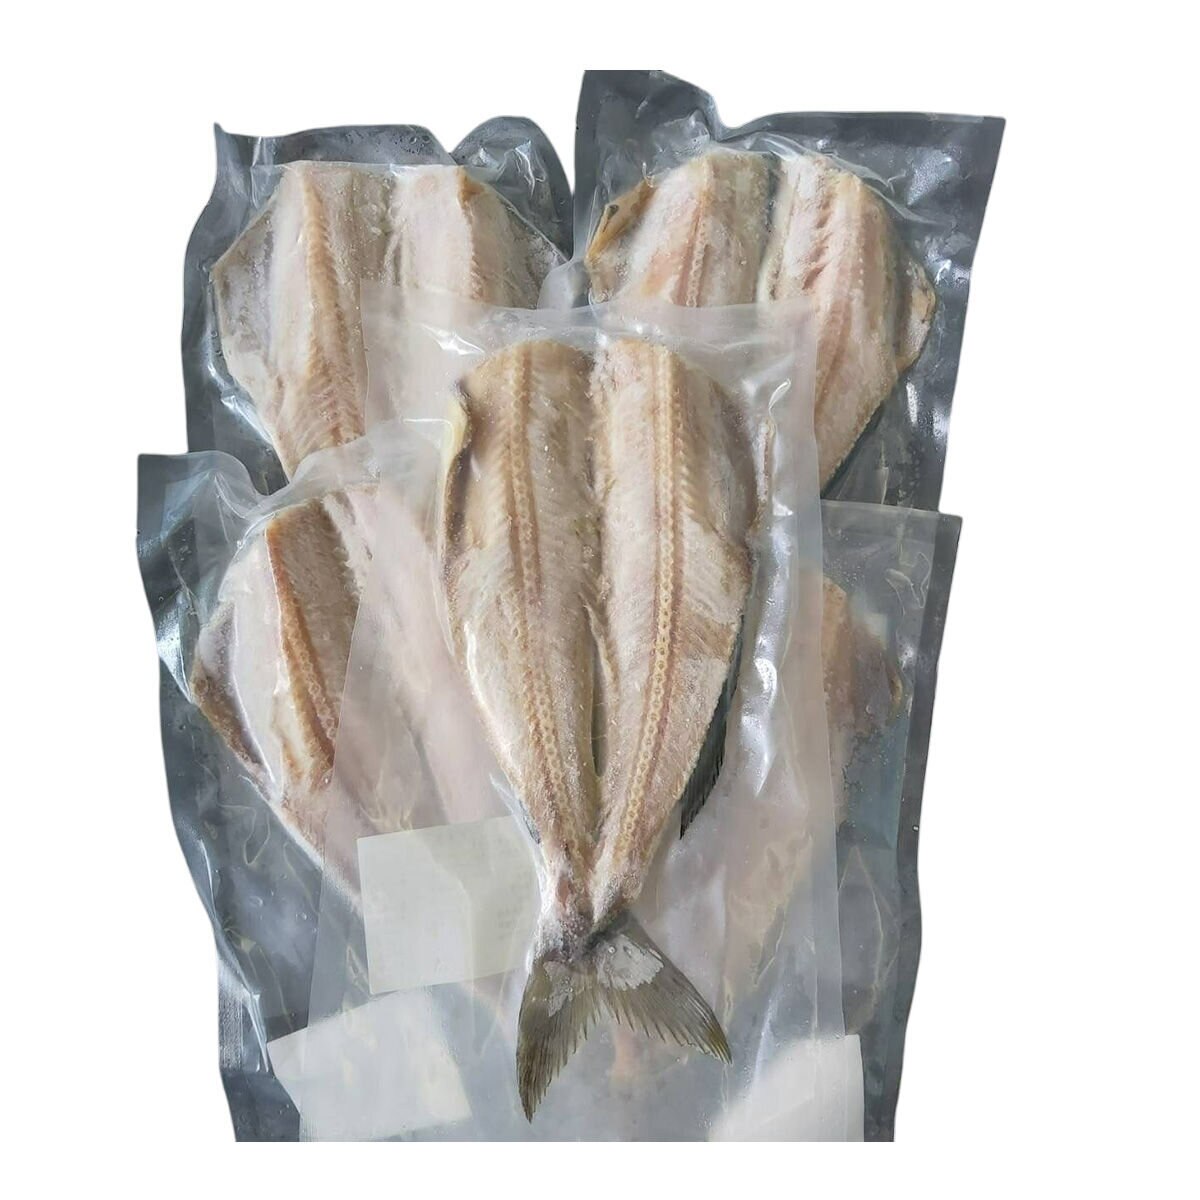  冷凍花魚一夜干 X 5片